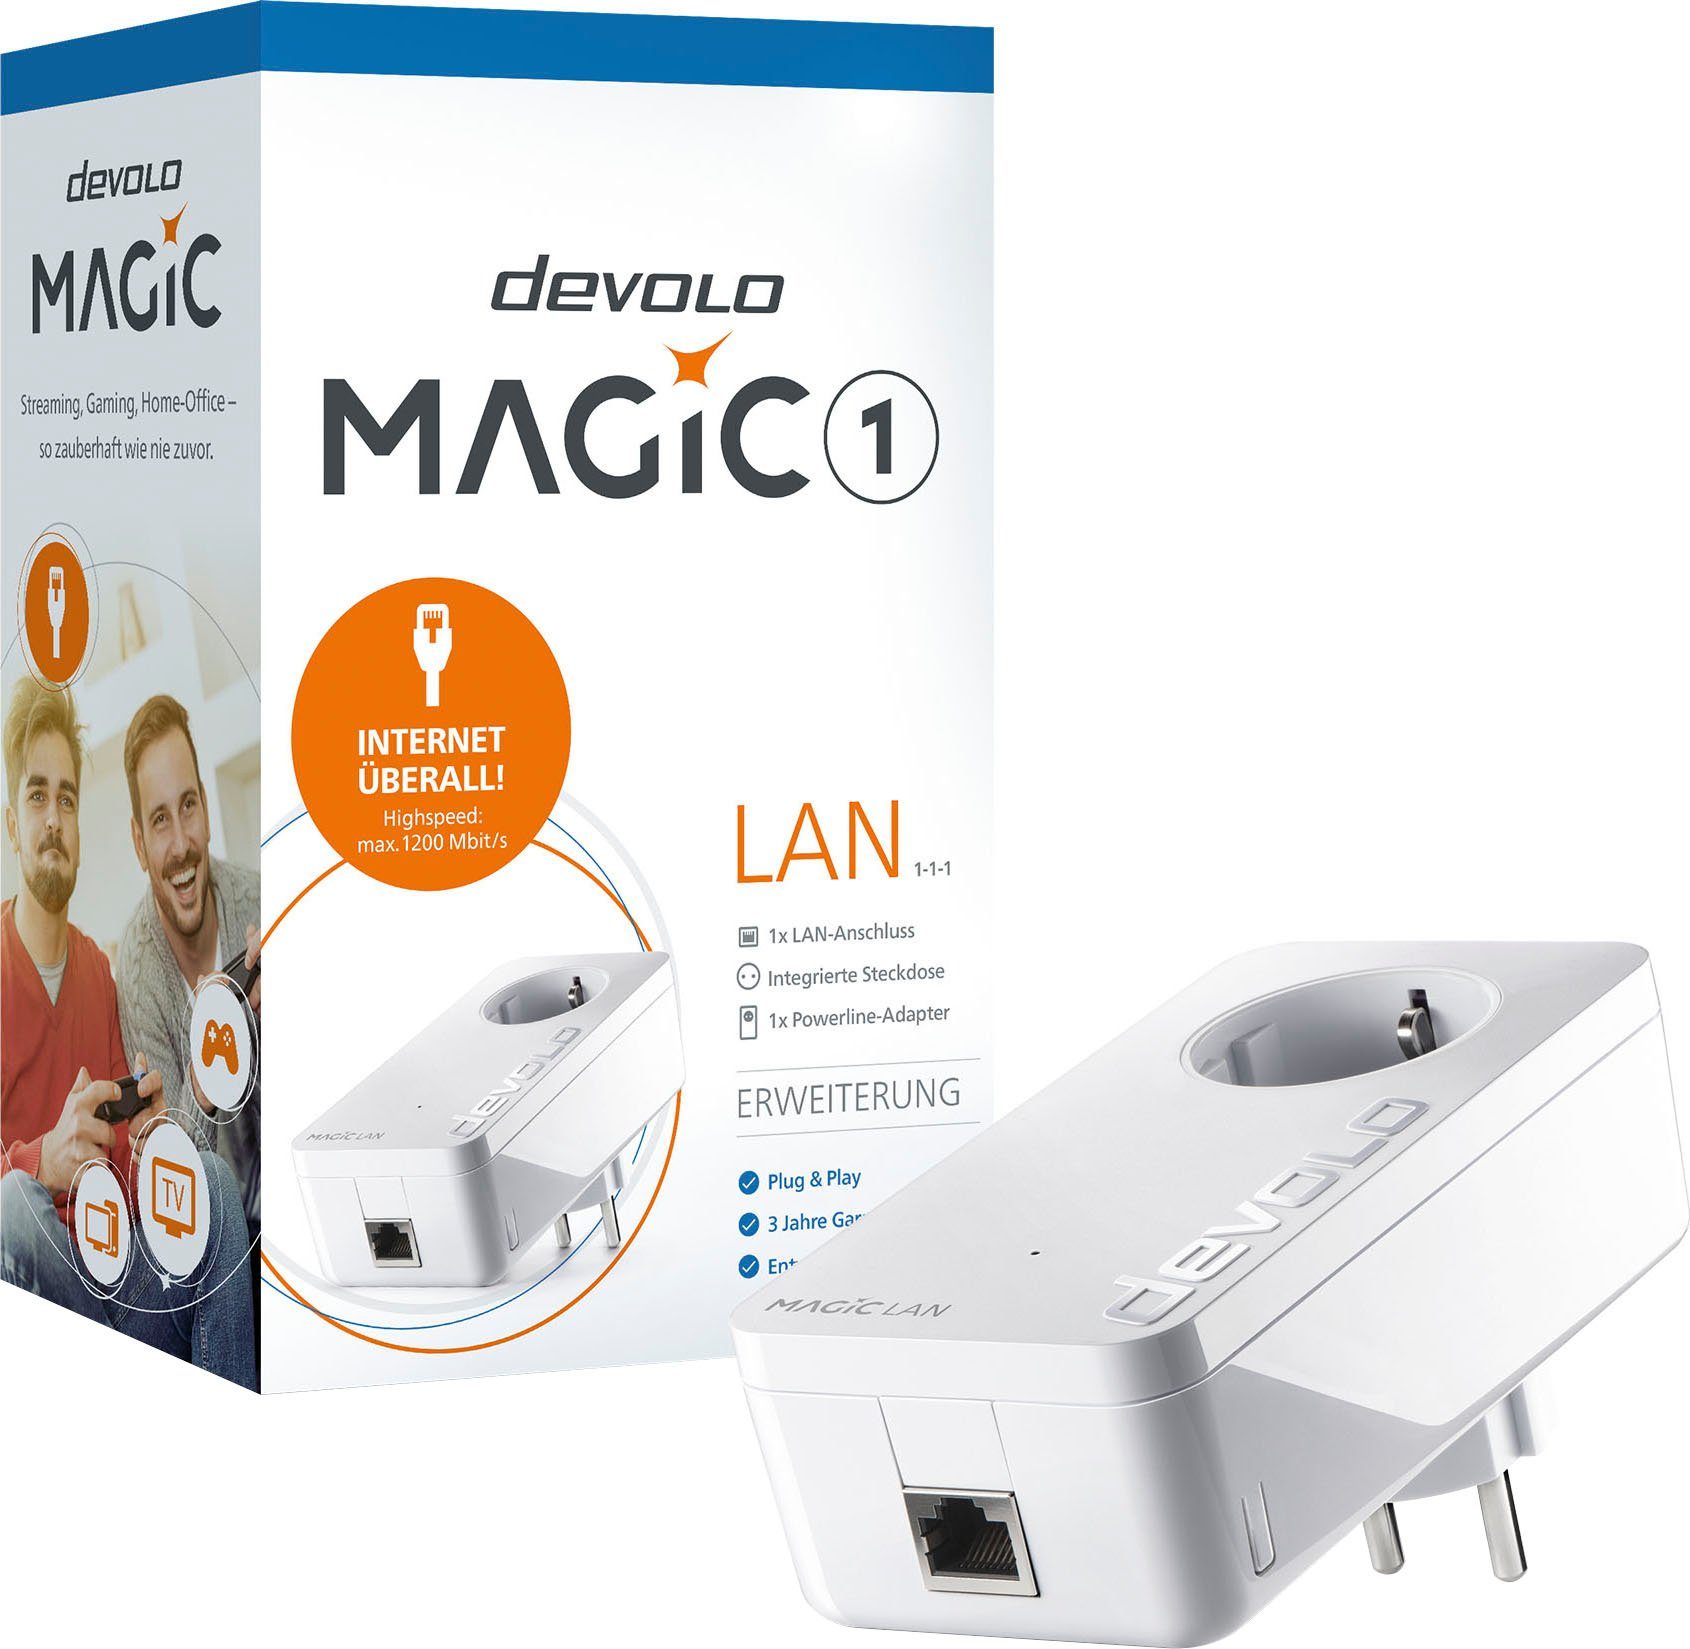 DEVOLO Magic 1 LAN (1200Mbit, 1x G.hn, LAN-Router GbitLAN, Ergänzung Heimnetz)